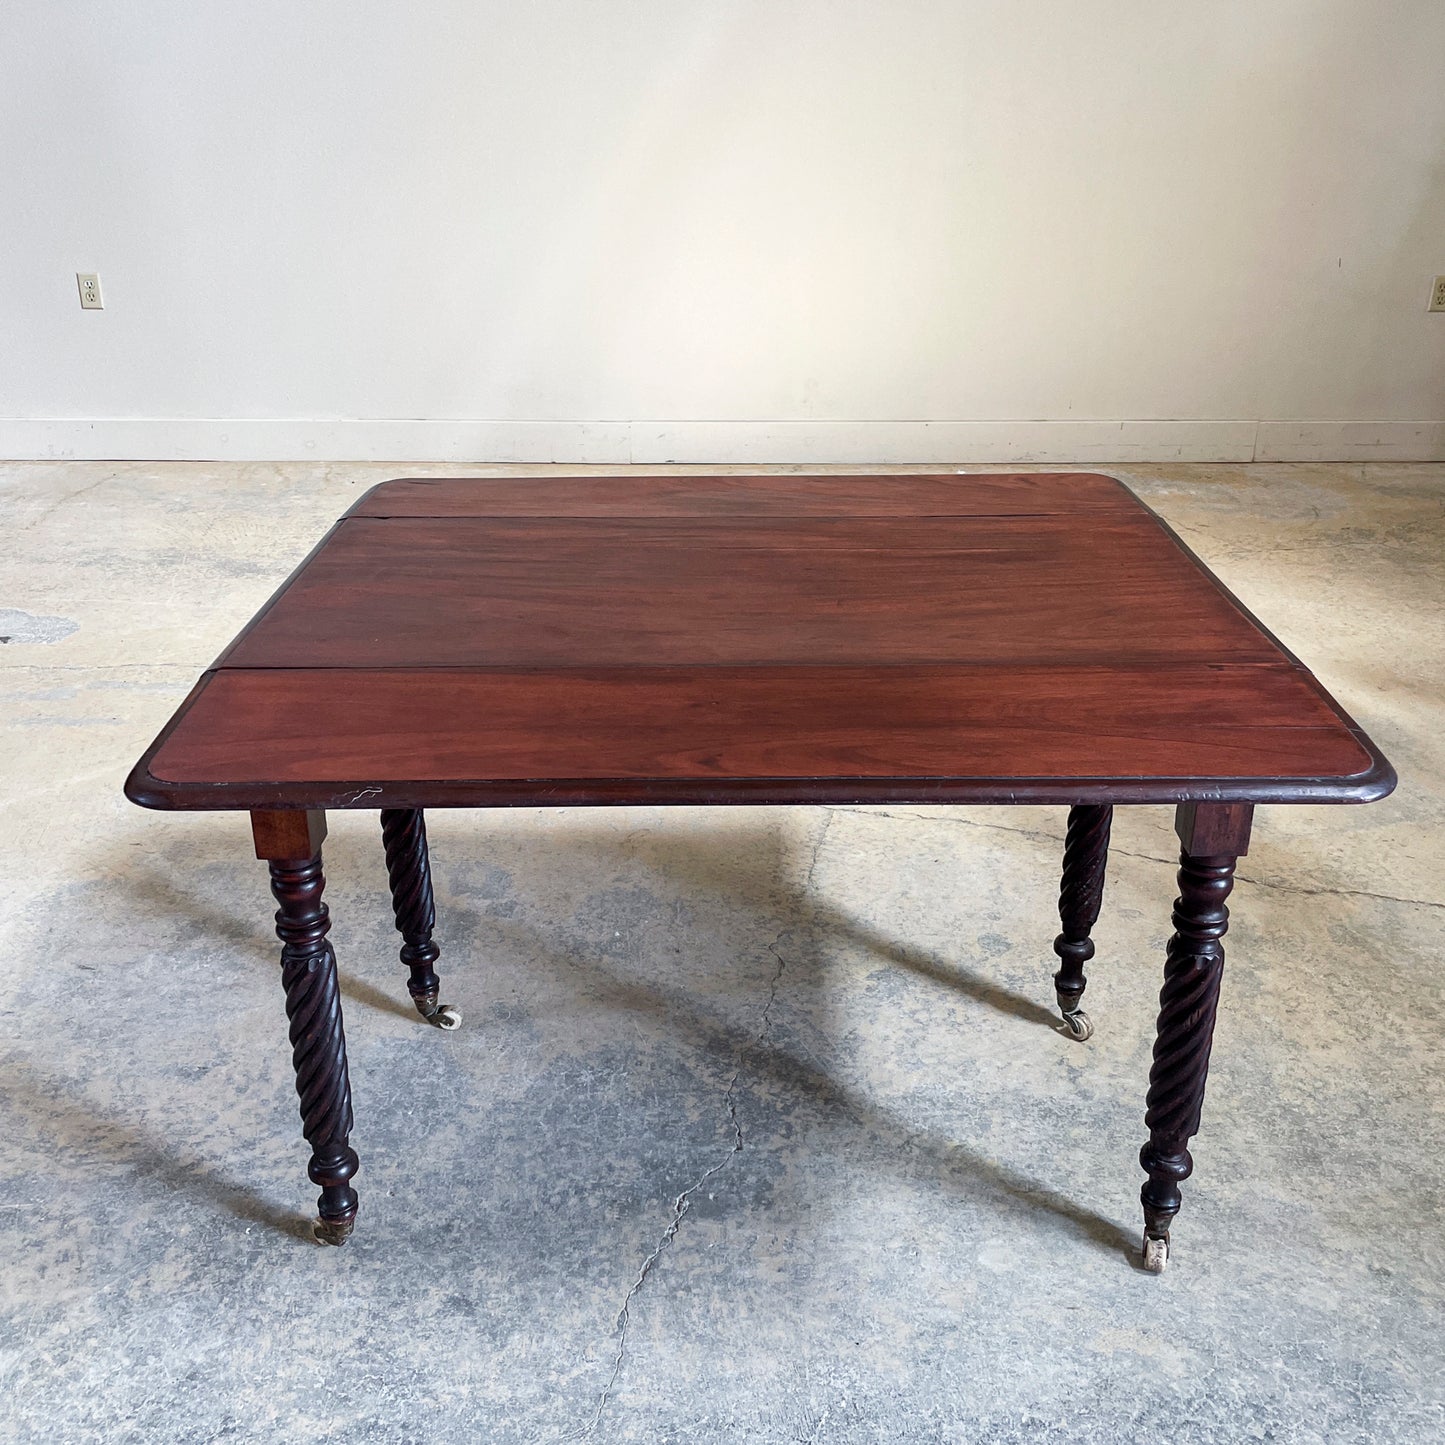 Antique Mahogany Dropleaf Table